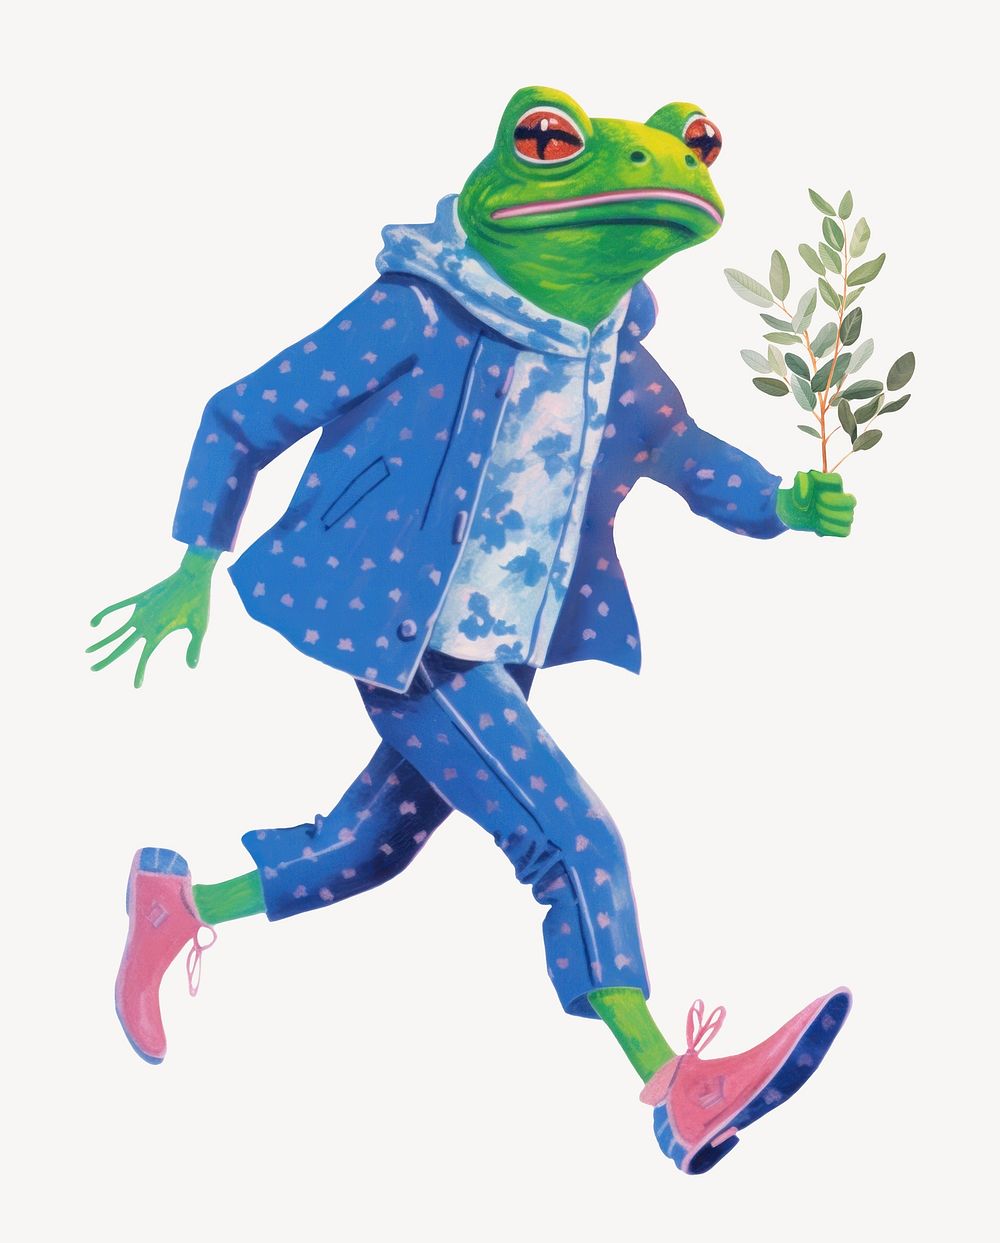 Frog character holding leaf digital art illustration